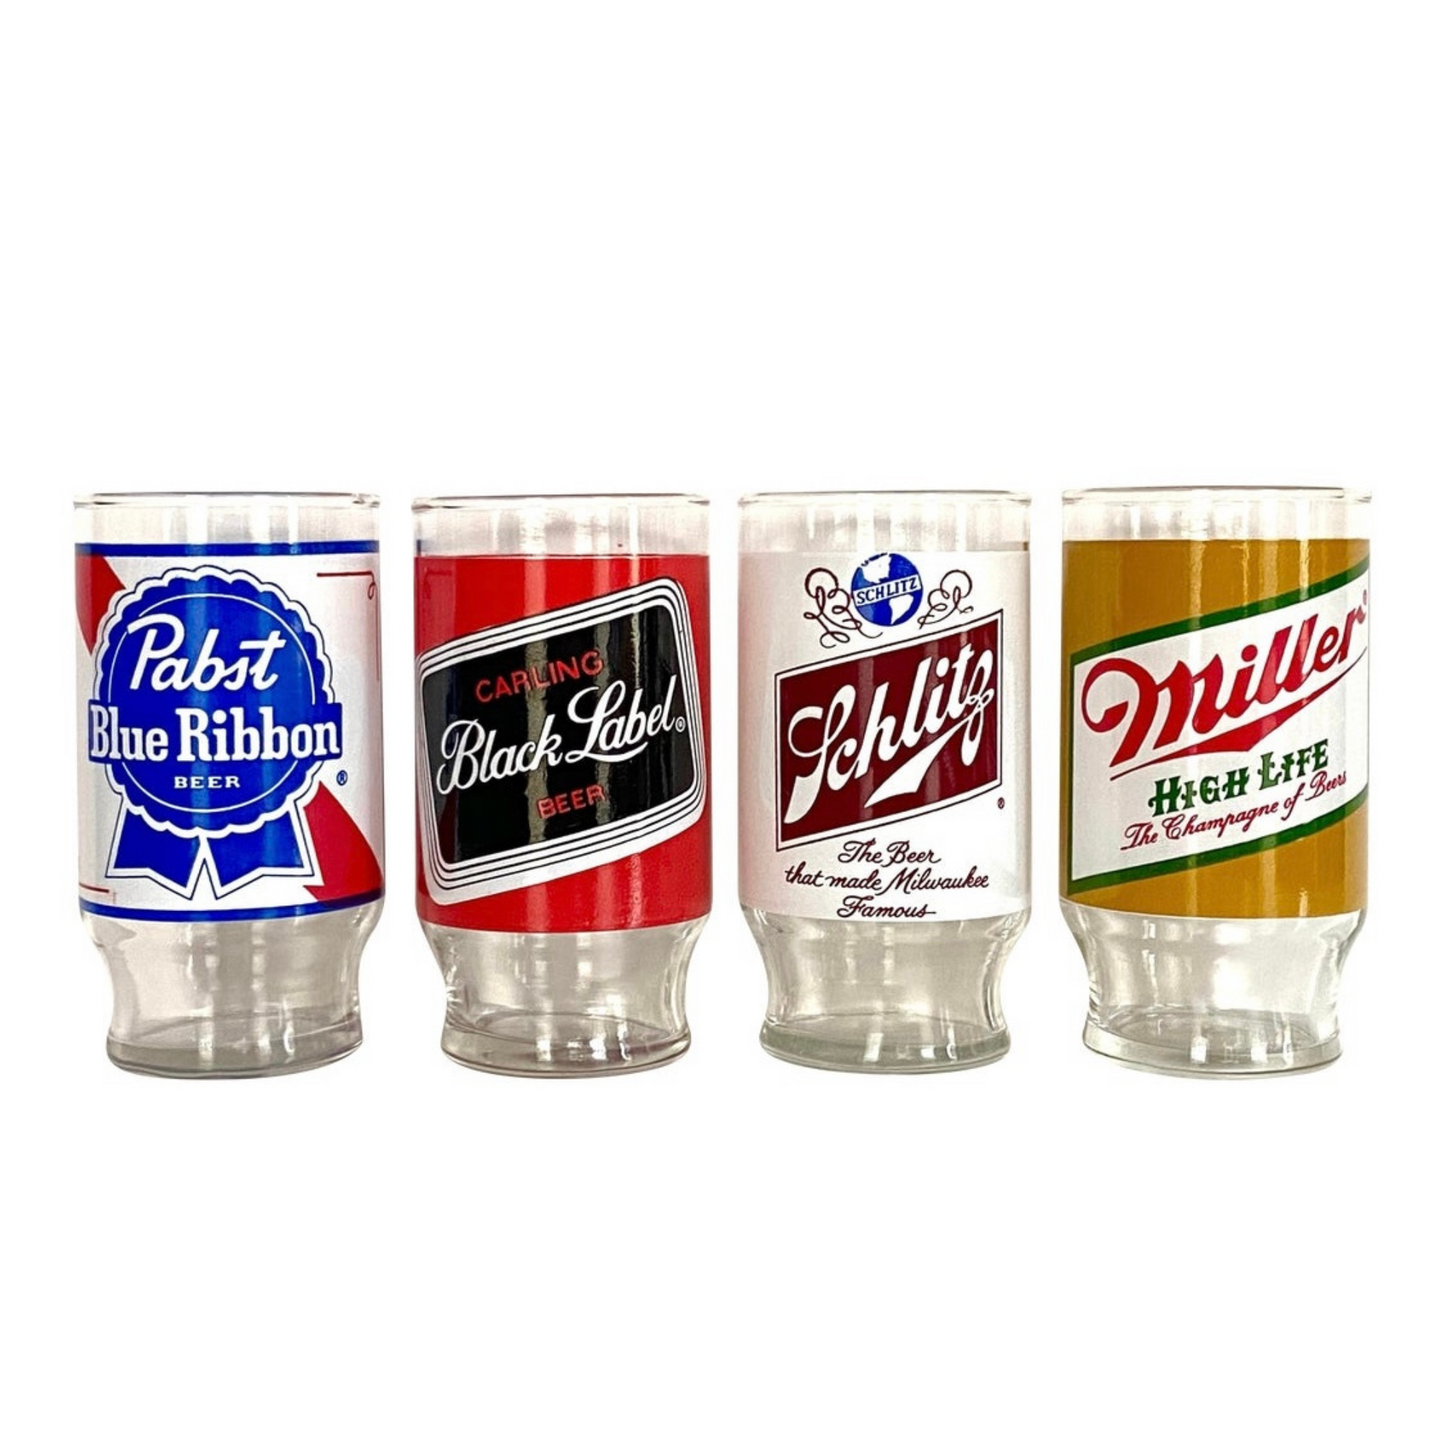 Vintage Old School Name Brand Beer Glasses Tumblers . Sets of 4